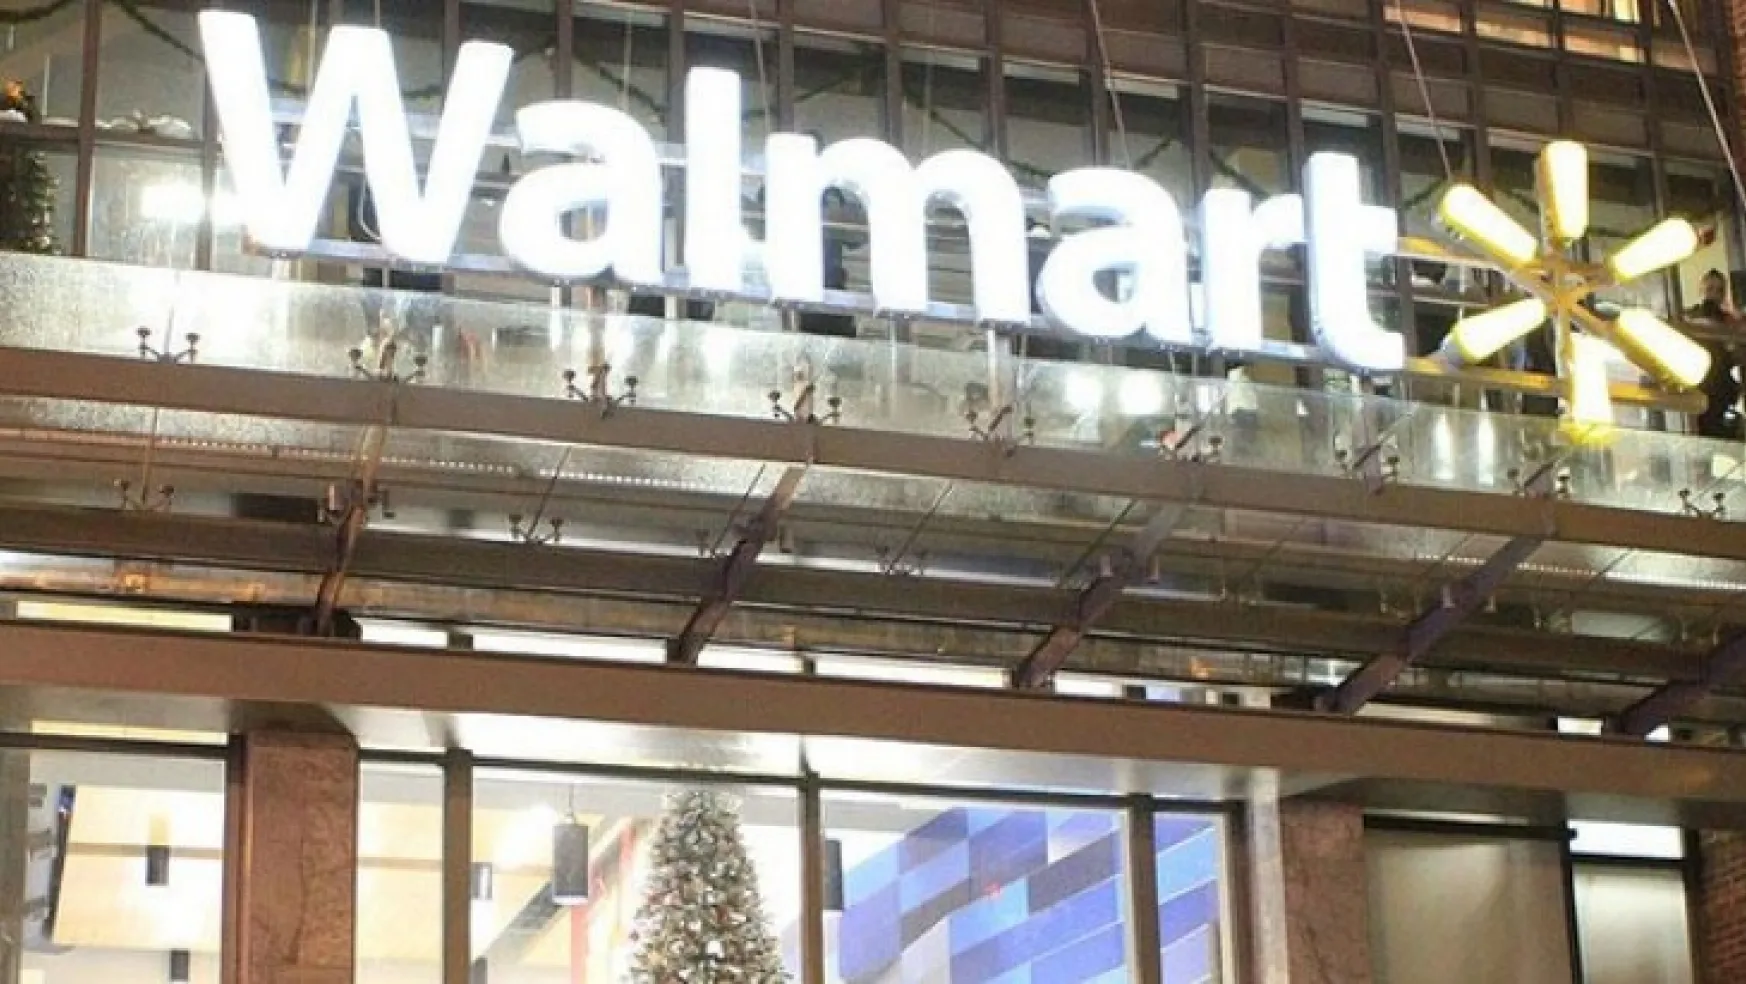 Walmart gelişmesi kripto para piyasalarını hareketlendirdi